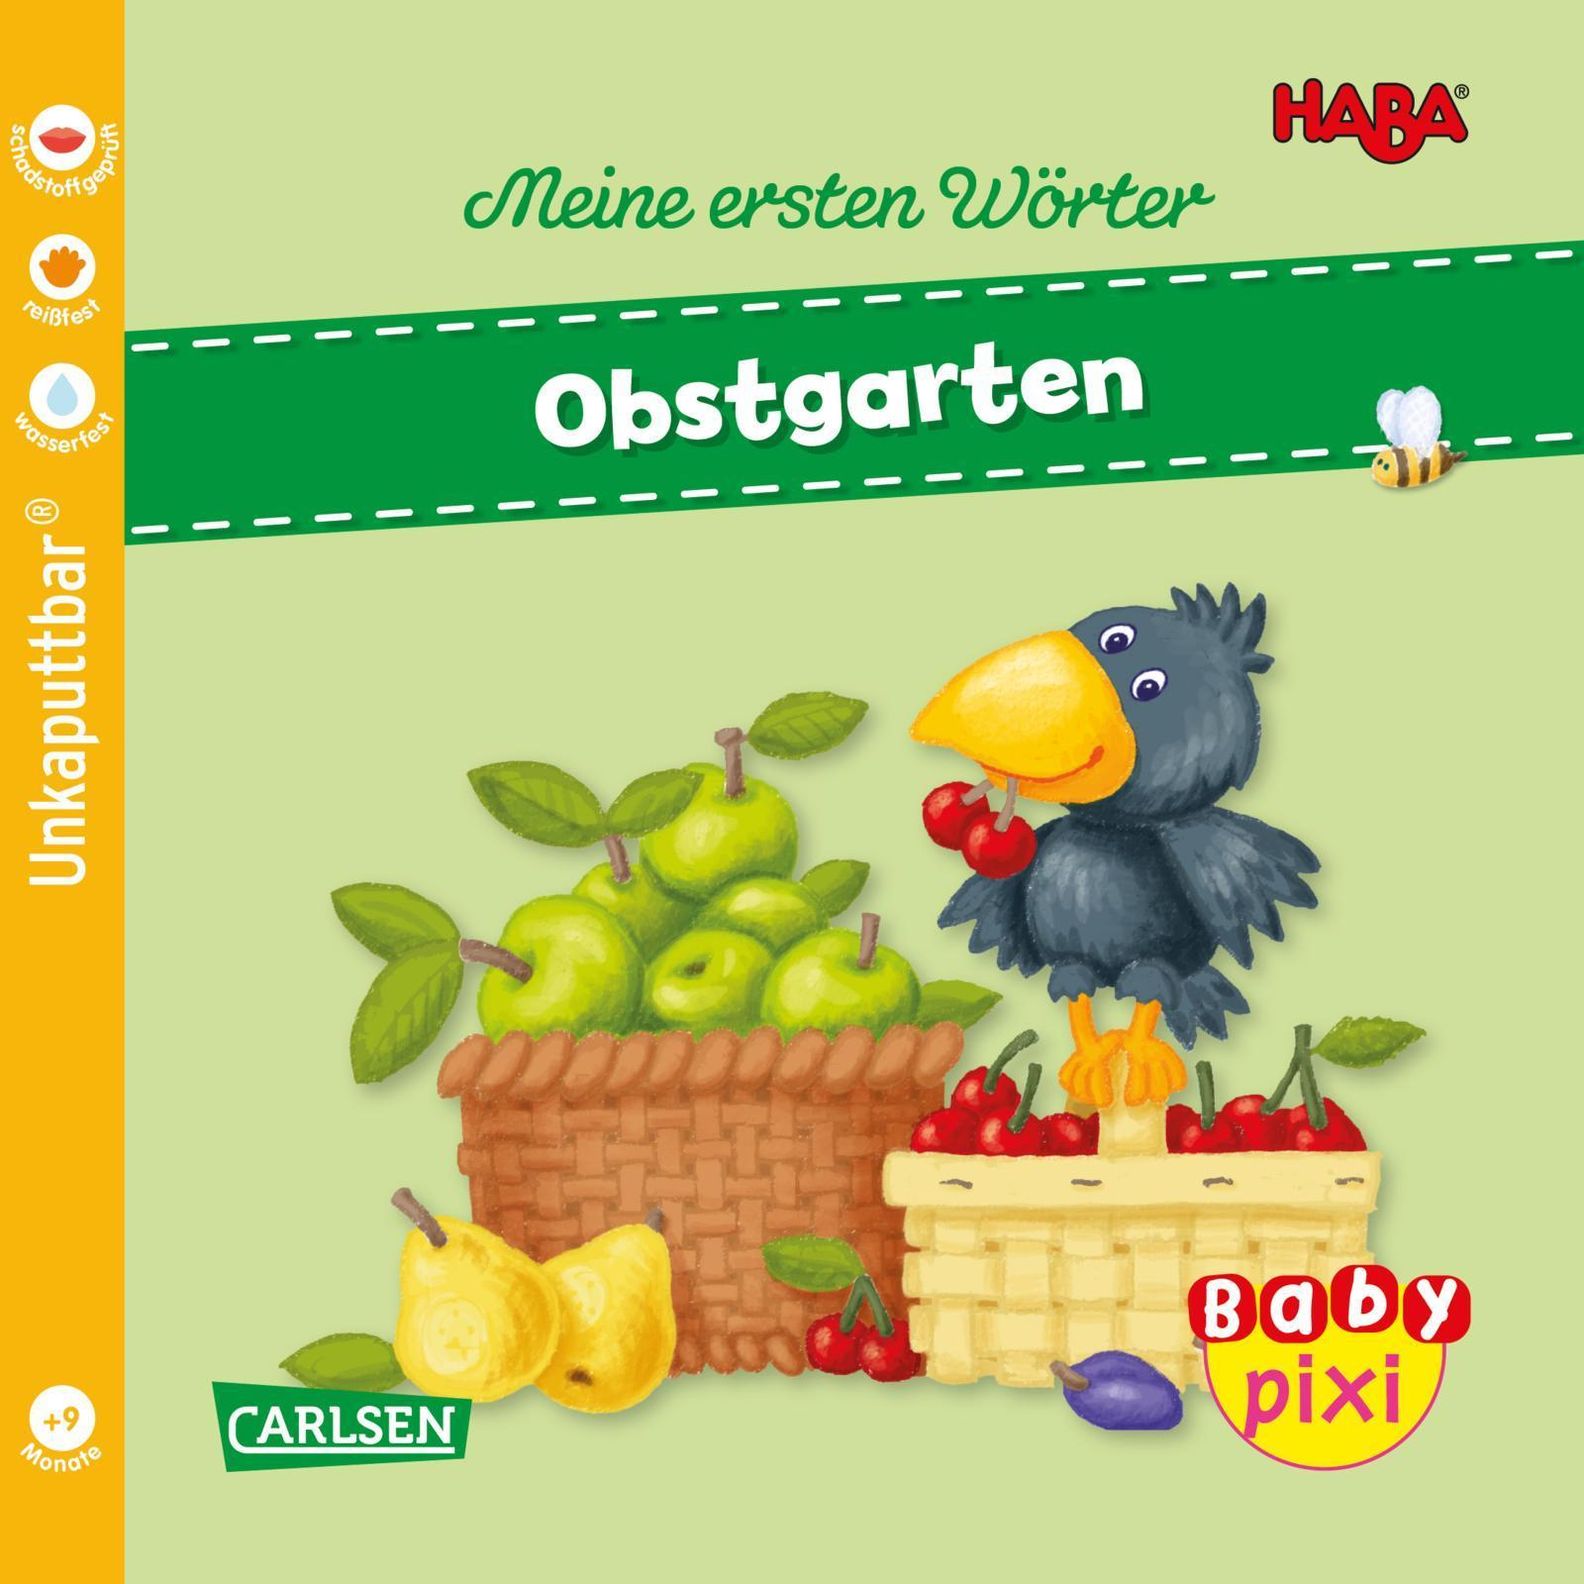 Baby Pixi unkaputtbar 89: VE 5 HABA Erste Wörter: Obstgarten 5 Exemplare  Buch versandkostenfrei bei Weltbild.de bestellen